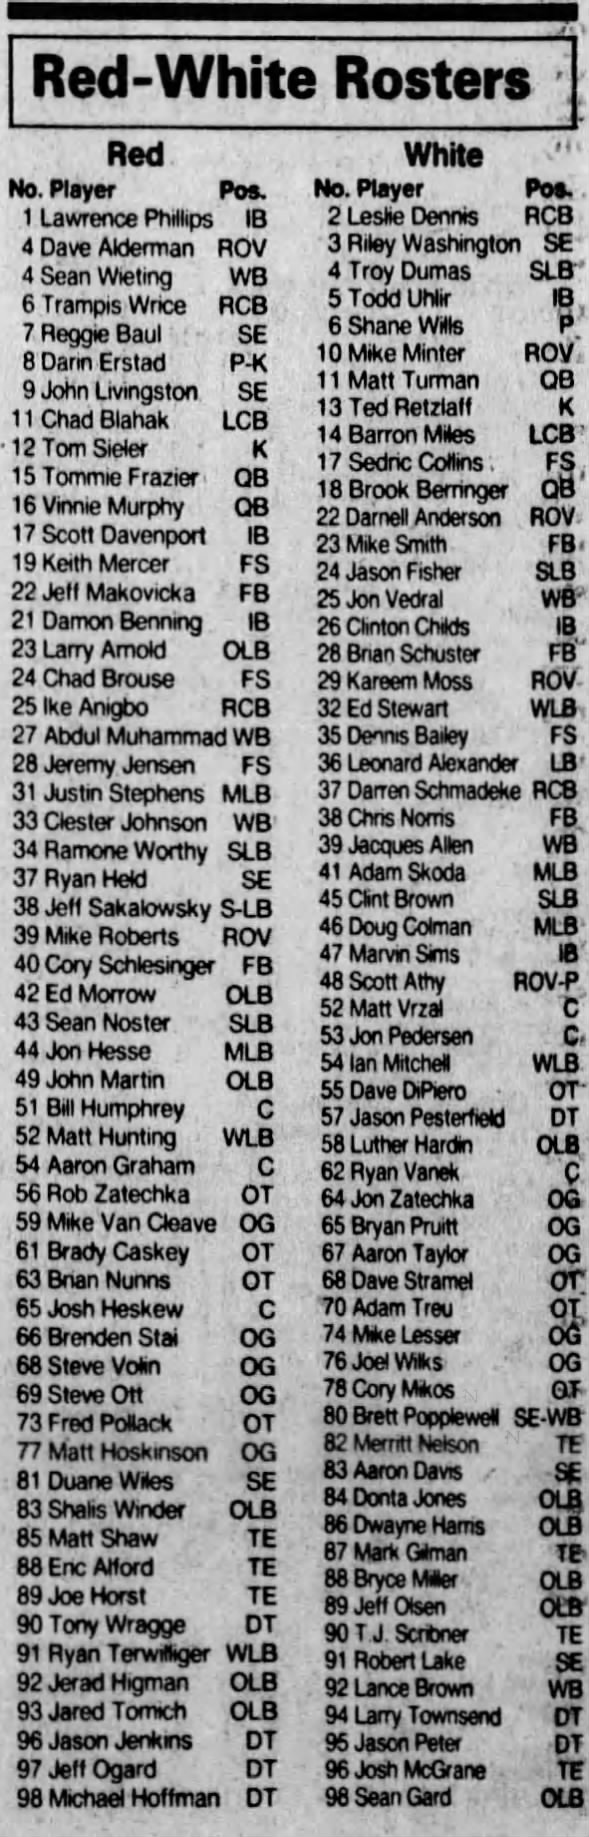 1994 Nebraska spring game rosters